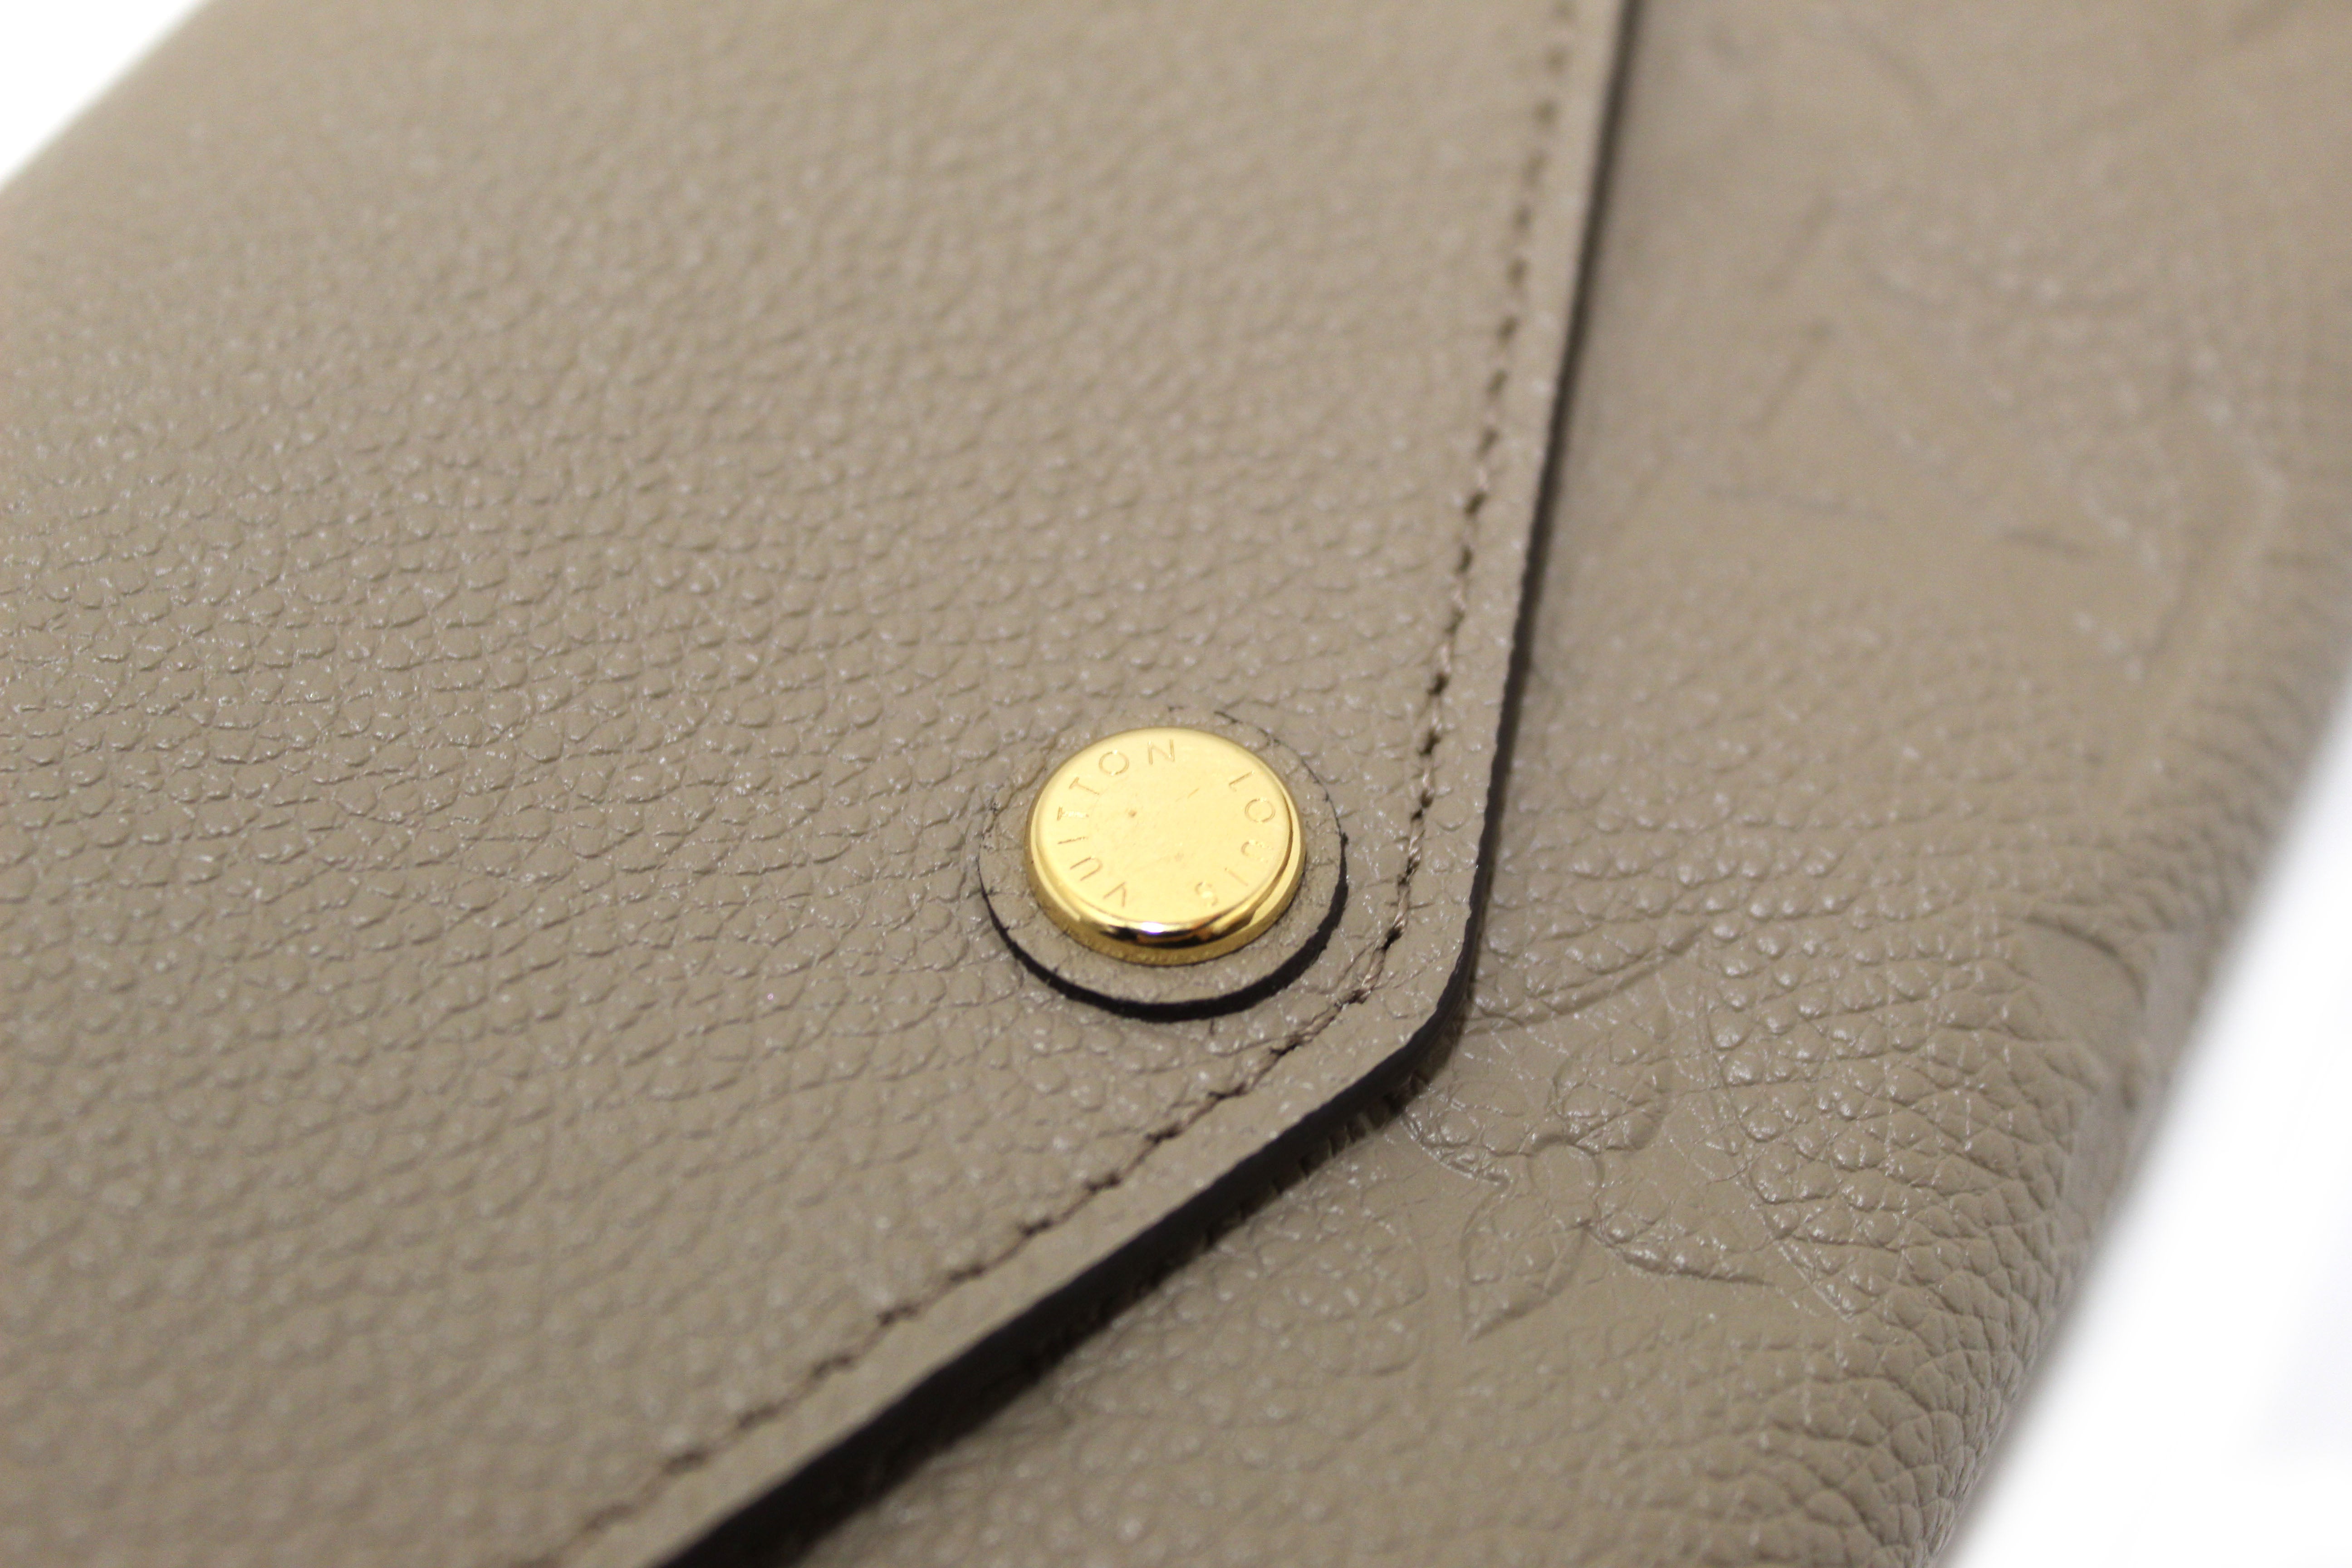 Authentic Louis Vuitton Touterelle Beige Monogram Empreinte Leather Sarah Wallet